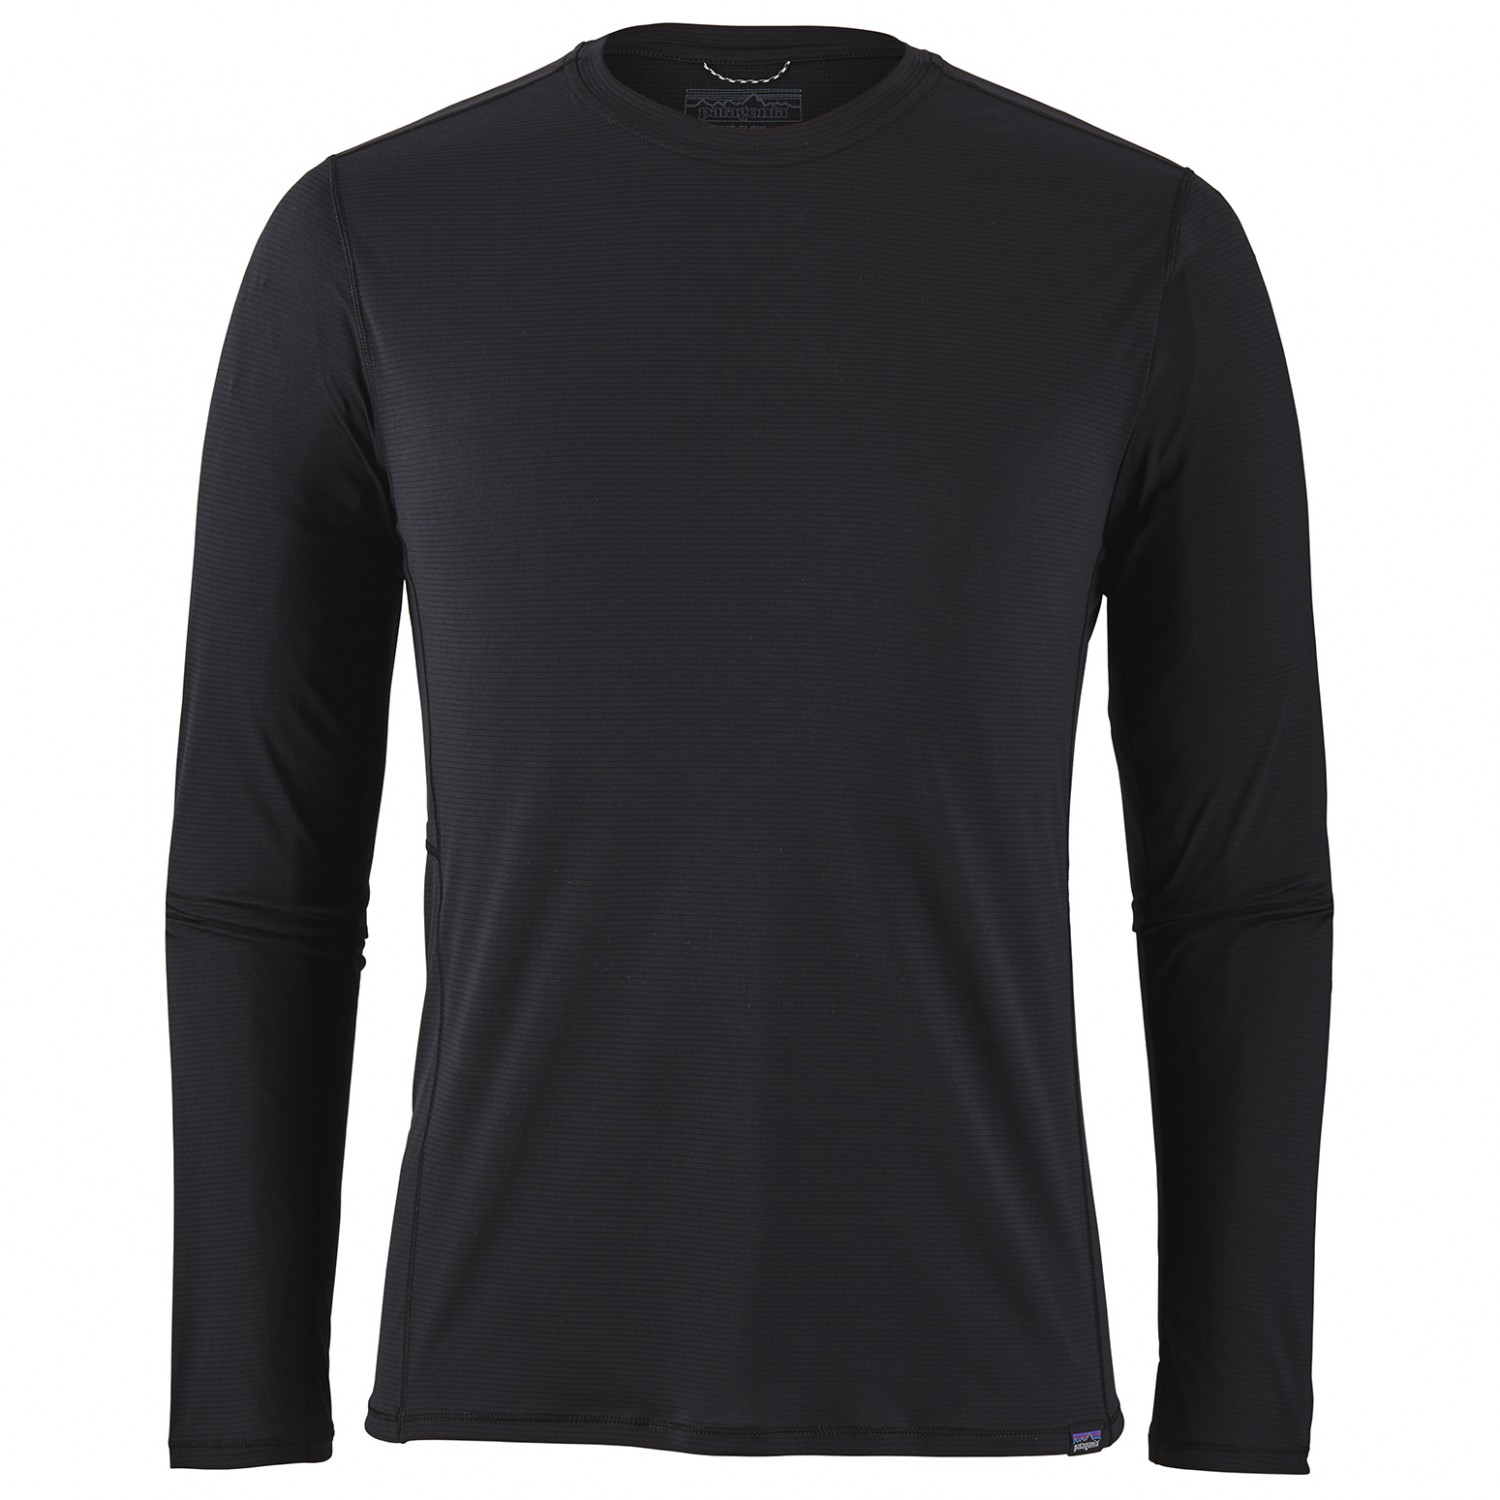 Функциональная рубашка Patagonia L/S Cap Cool Lightweight Shirt, черный